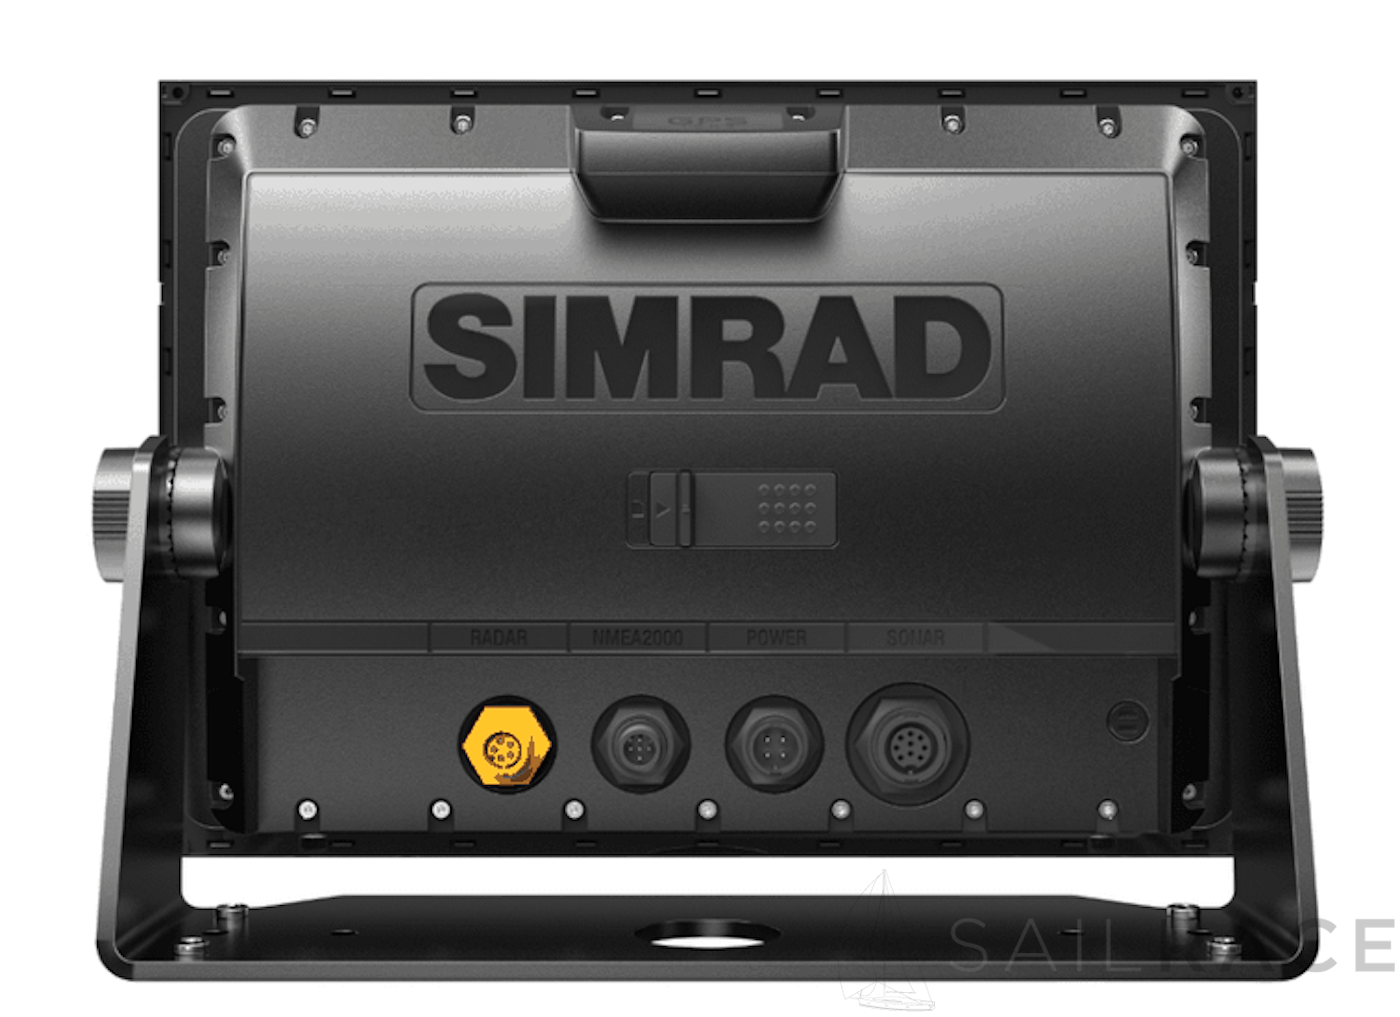 Simrad chartplotter de 12 pulgadas y pantalla de radar con radar de banda ancha 4G™ y transductor TotalScan™ - imagen 2